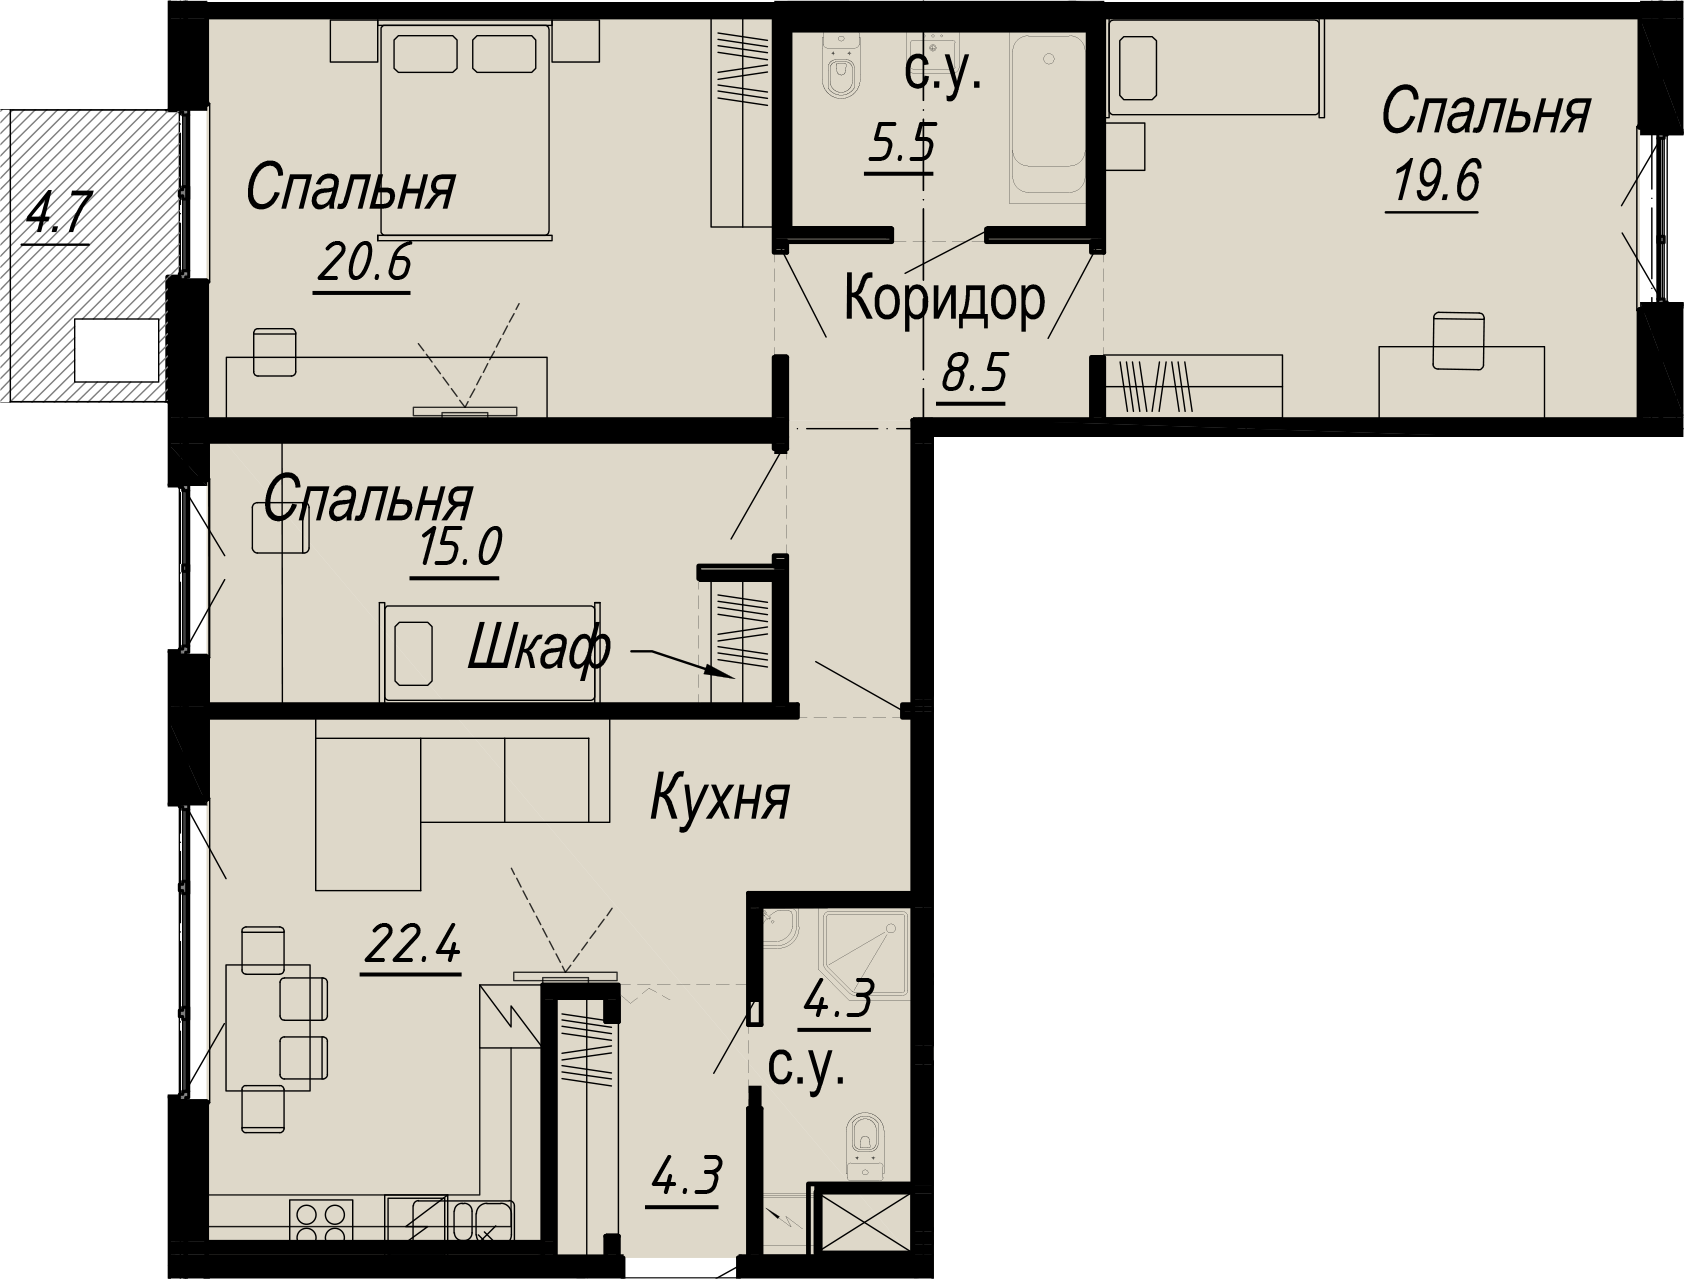 3-комнатная квартира  №10-6 в Meltzer Hall: 104.07 м², этаж 6 - купить в Санкт-Петербурге